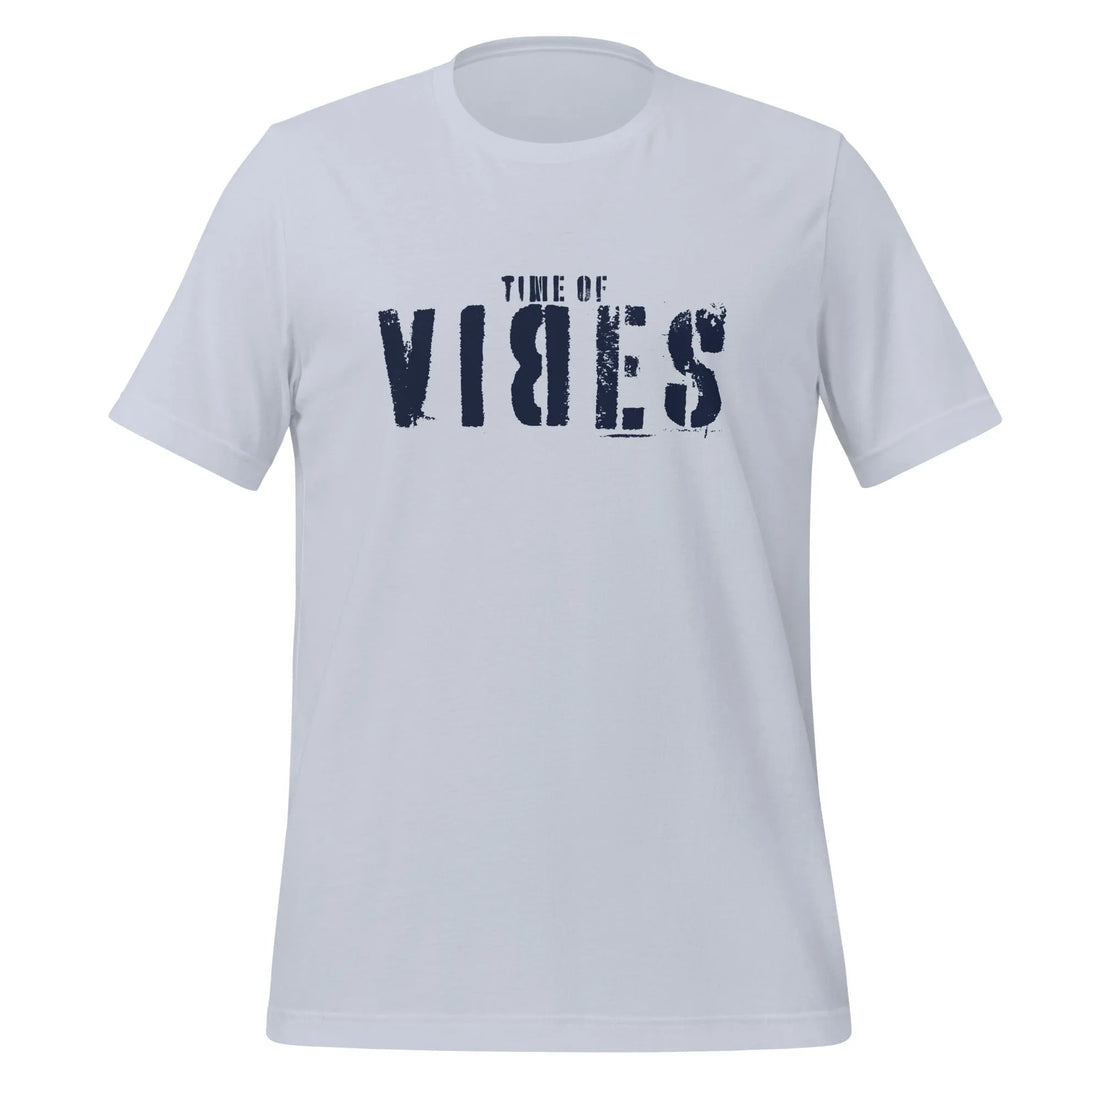 T-shirt en coton pour homme VIBES  (bleu clair/bleu marine)